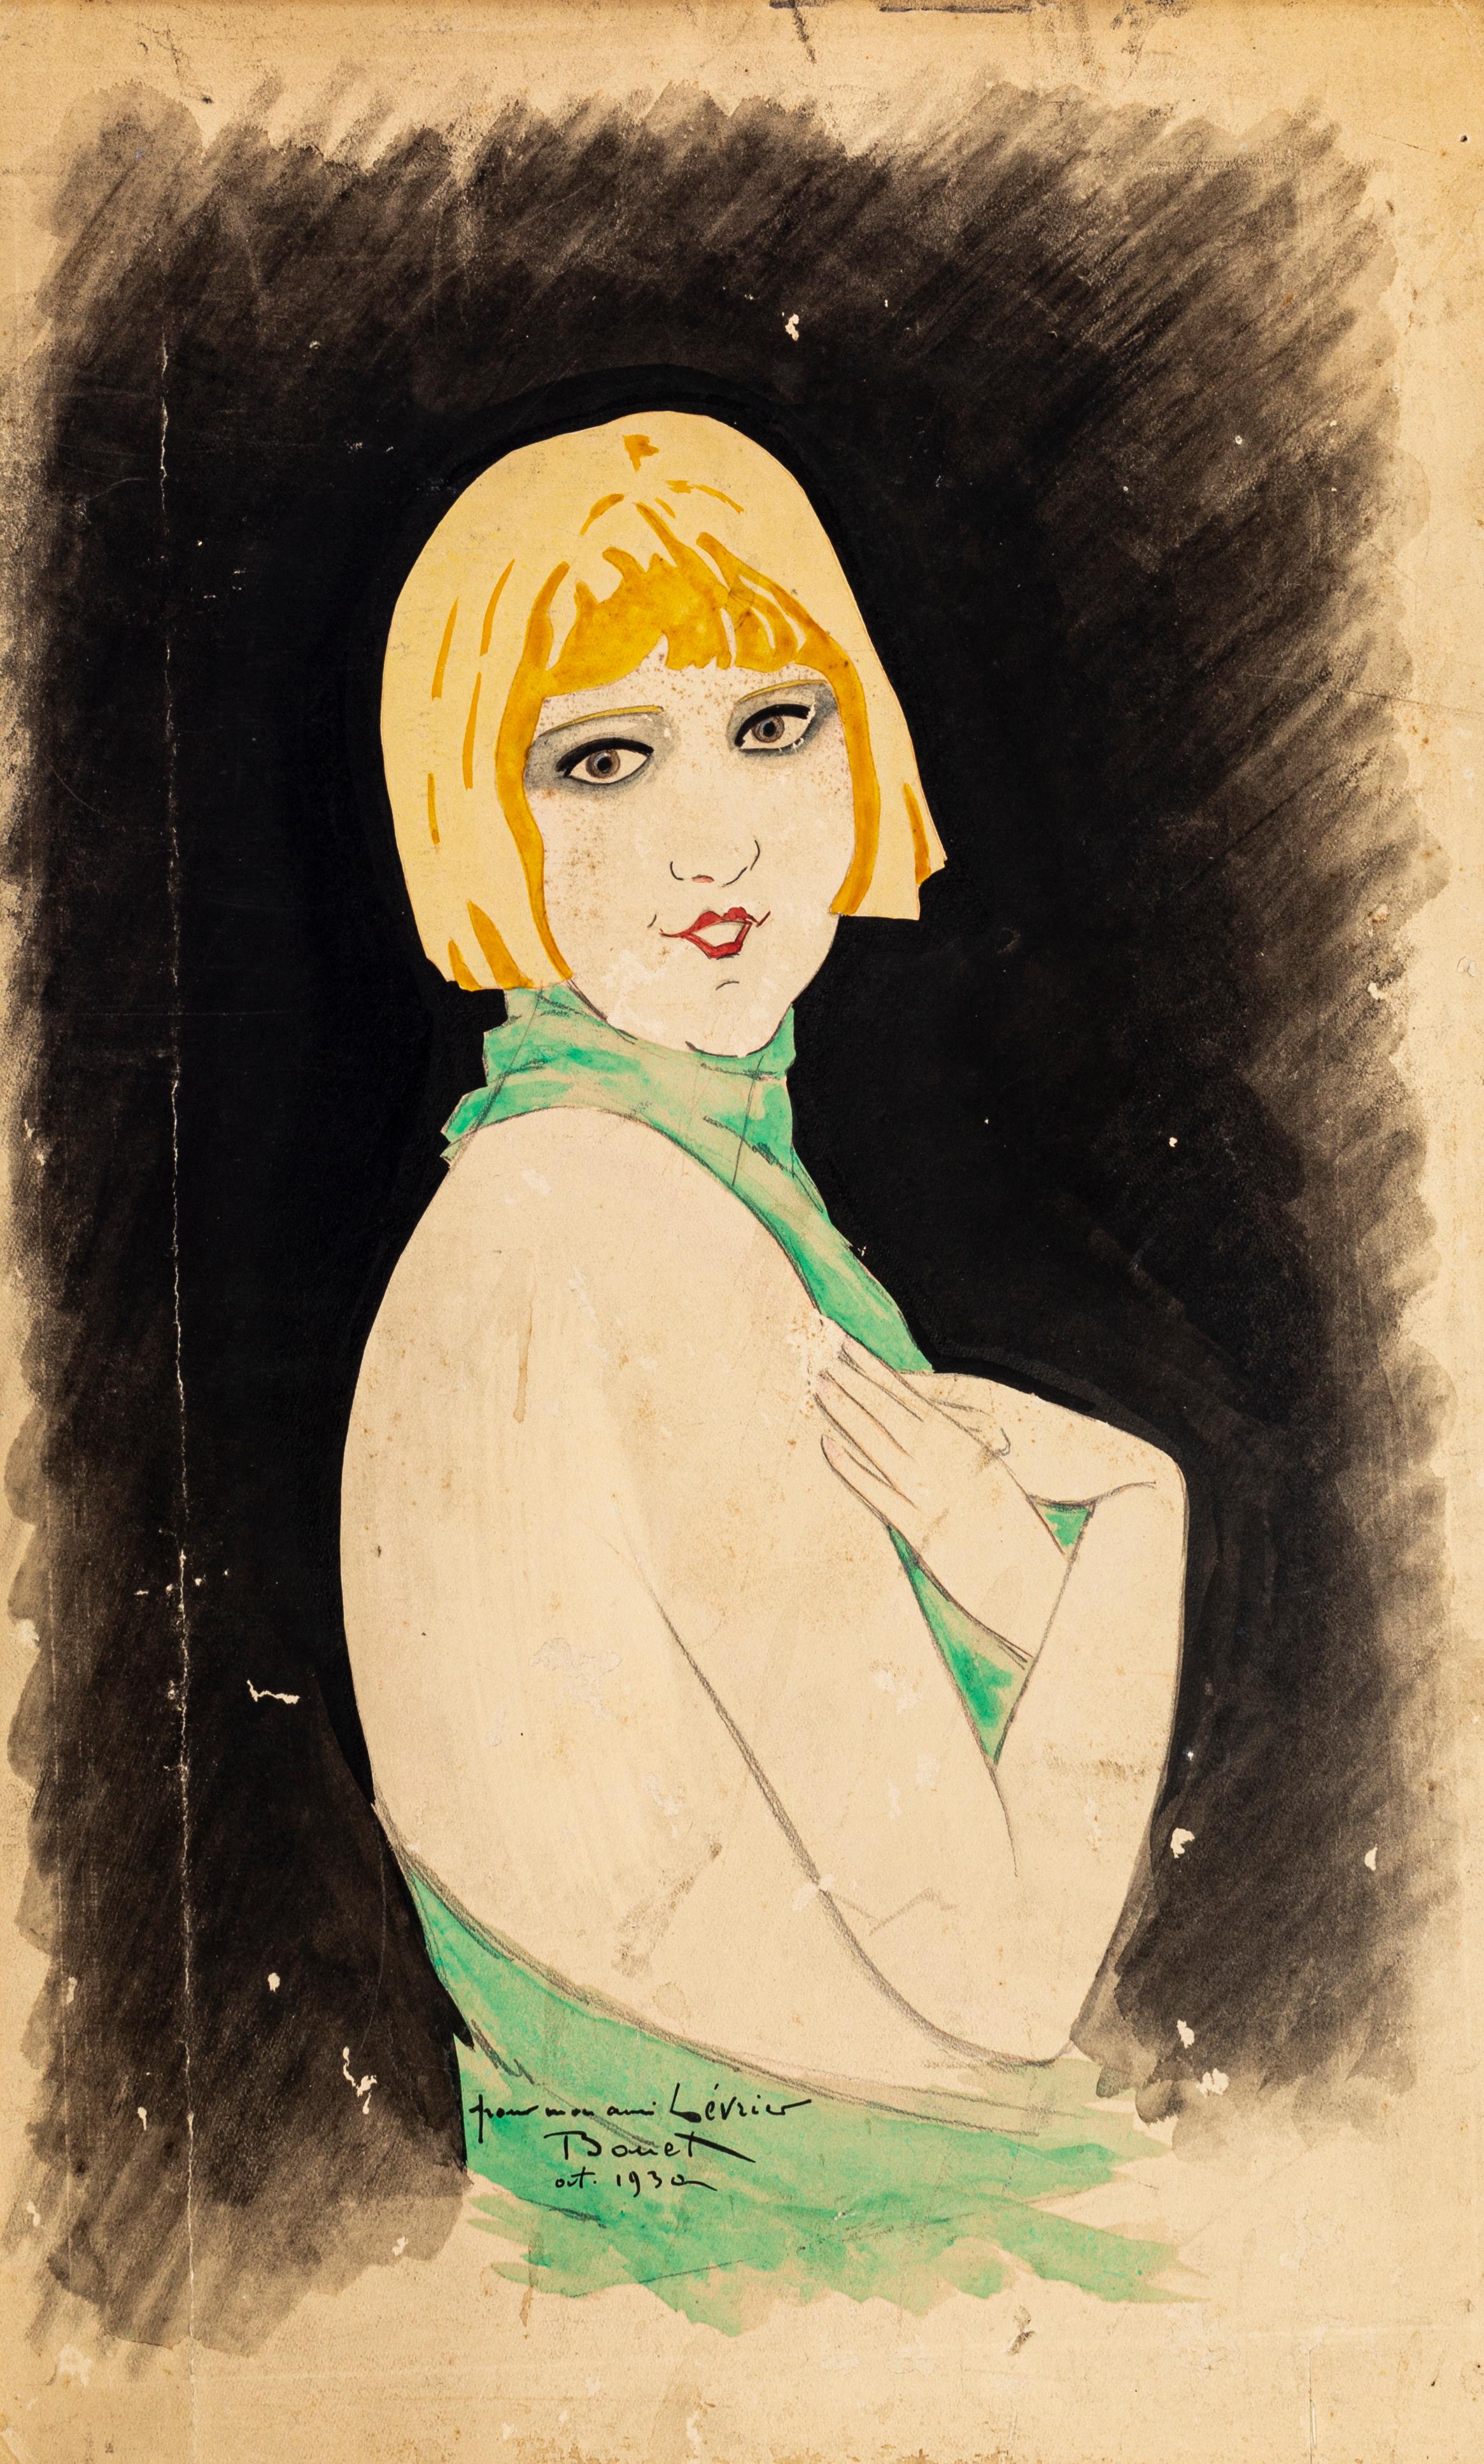 Portrait de femme est un dessin original à l'aquarelle réalisé par Paul Bonet en 1930.

Signé et daté à la main dans la marge inférieure. Dédicace manuscrite par l'artiste "pour mon ami Lévrier".

L'œuvre d'art représente un magnifique portrait de